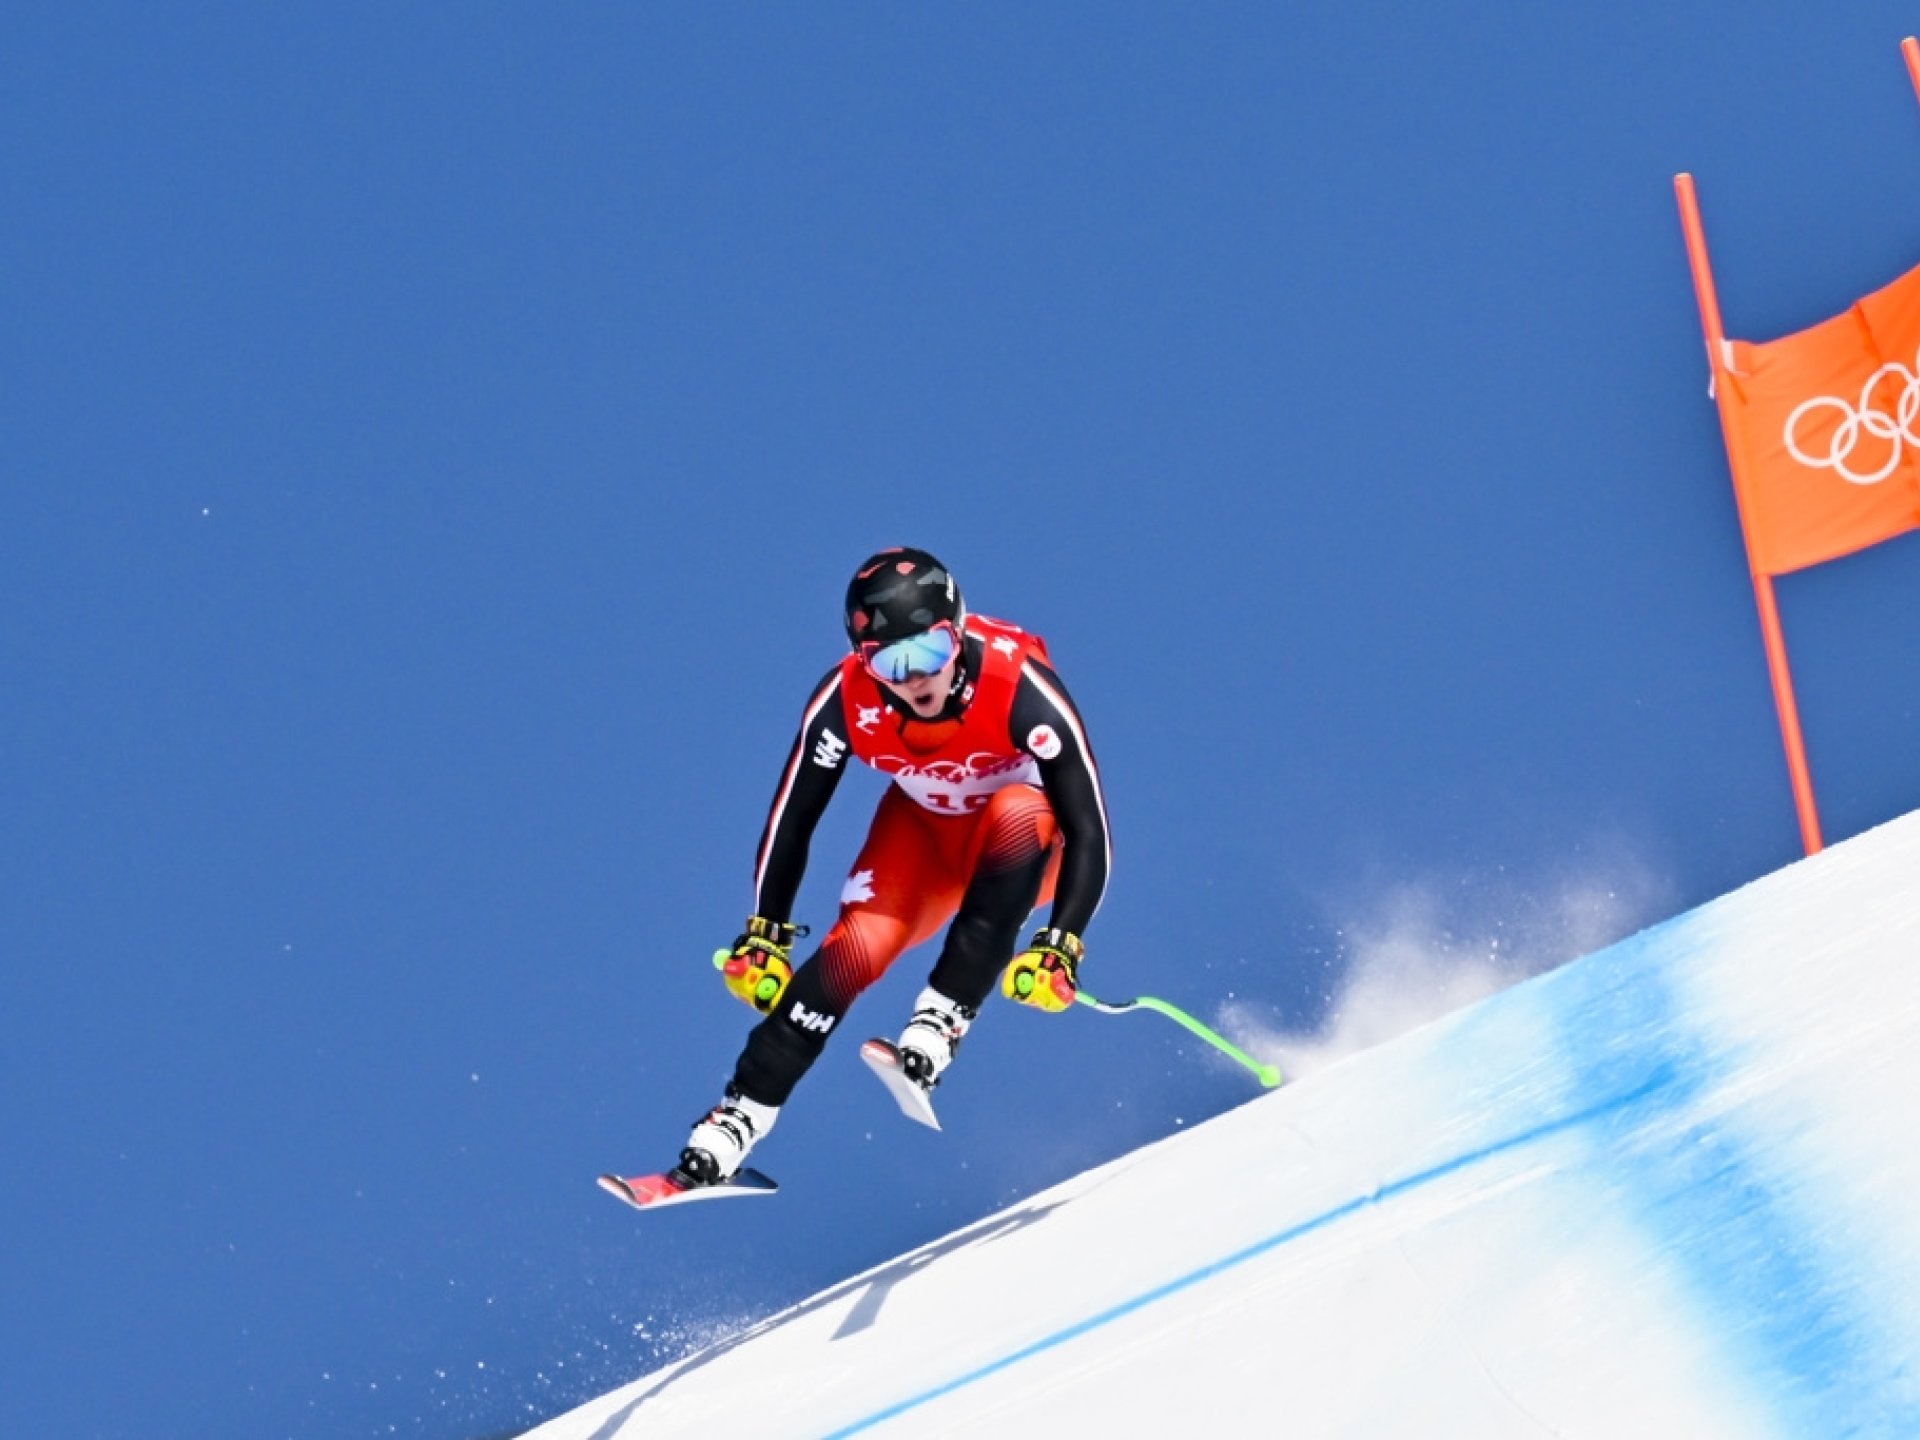 Le Canadien Philip Trevor en action durant la descente du combiné de ski alpin.